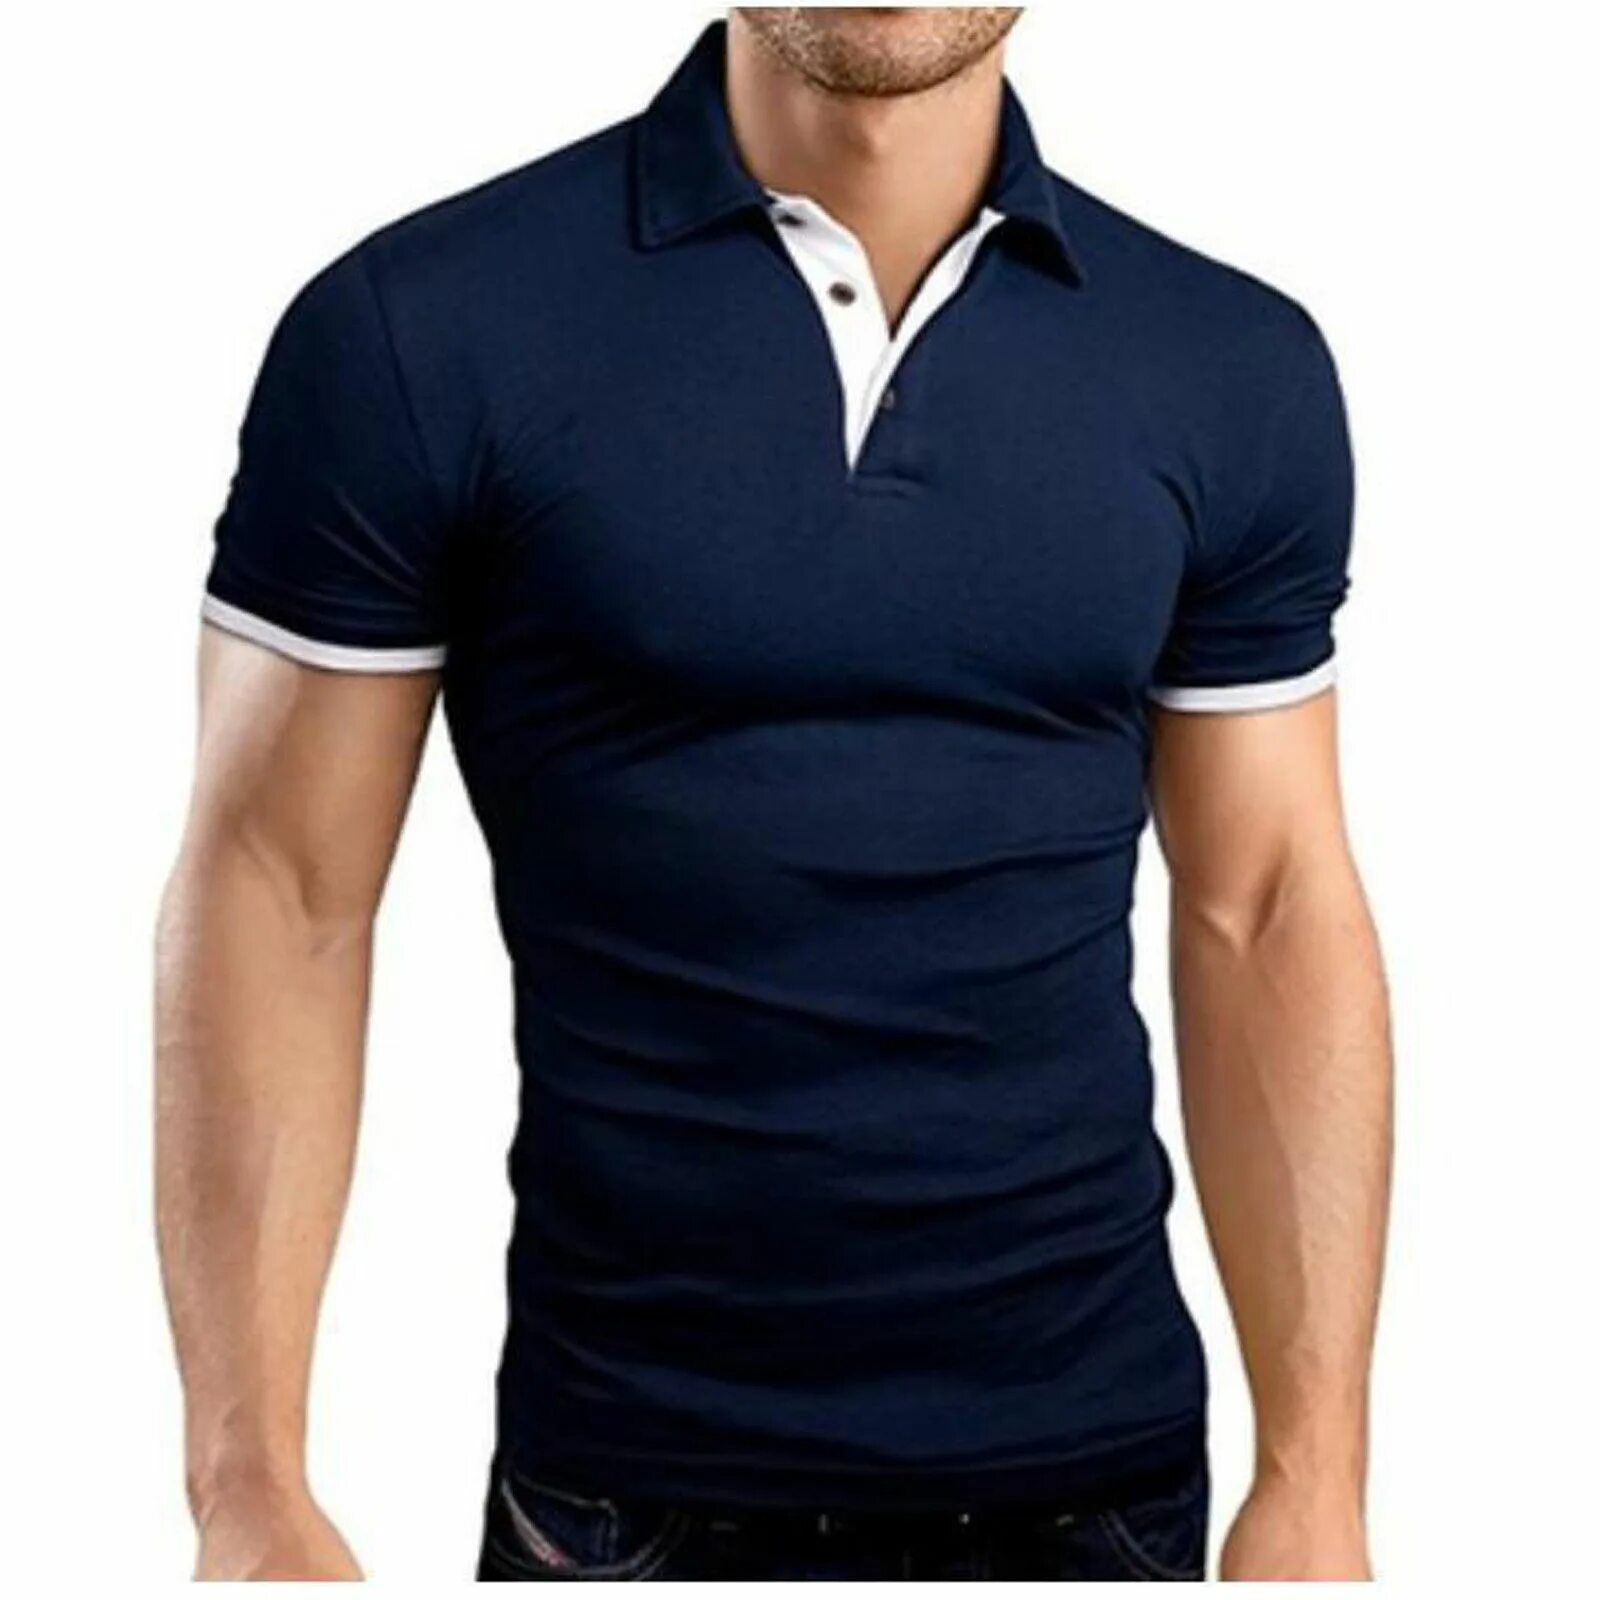 Футболка с рукавами рубашки. Men Polo Shirt. Polo t-Shirts Mens 2021. Поло слим фит. Polo футболки мужские vorotnik.